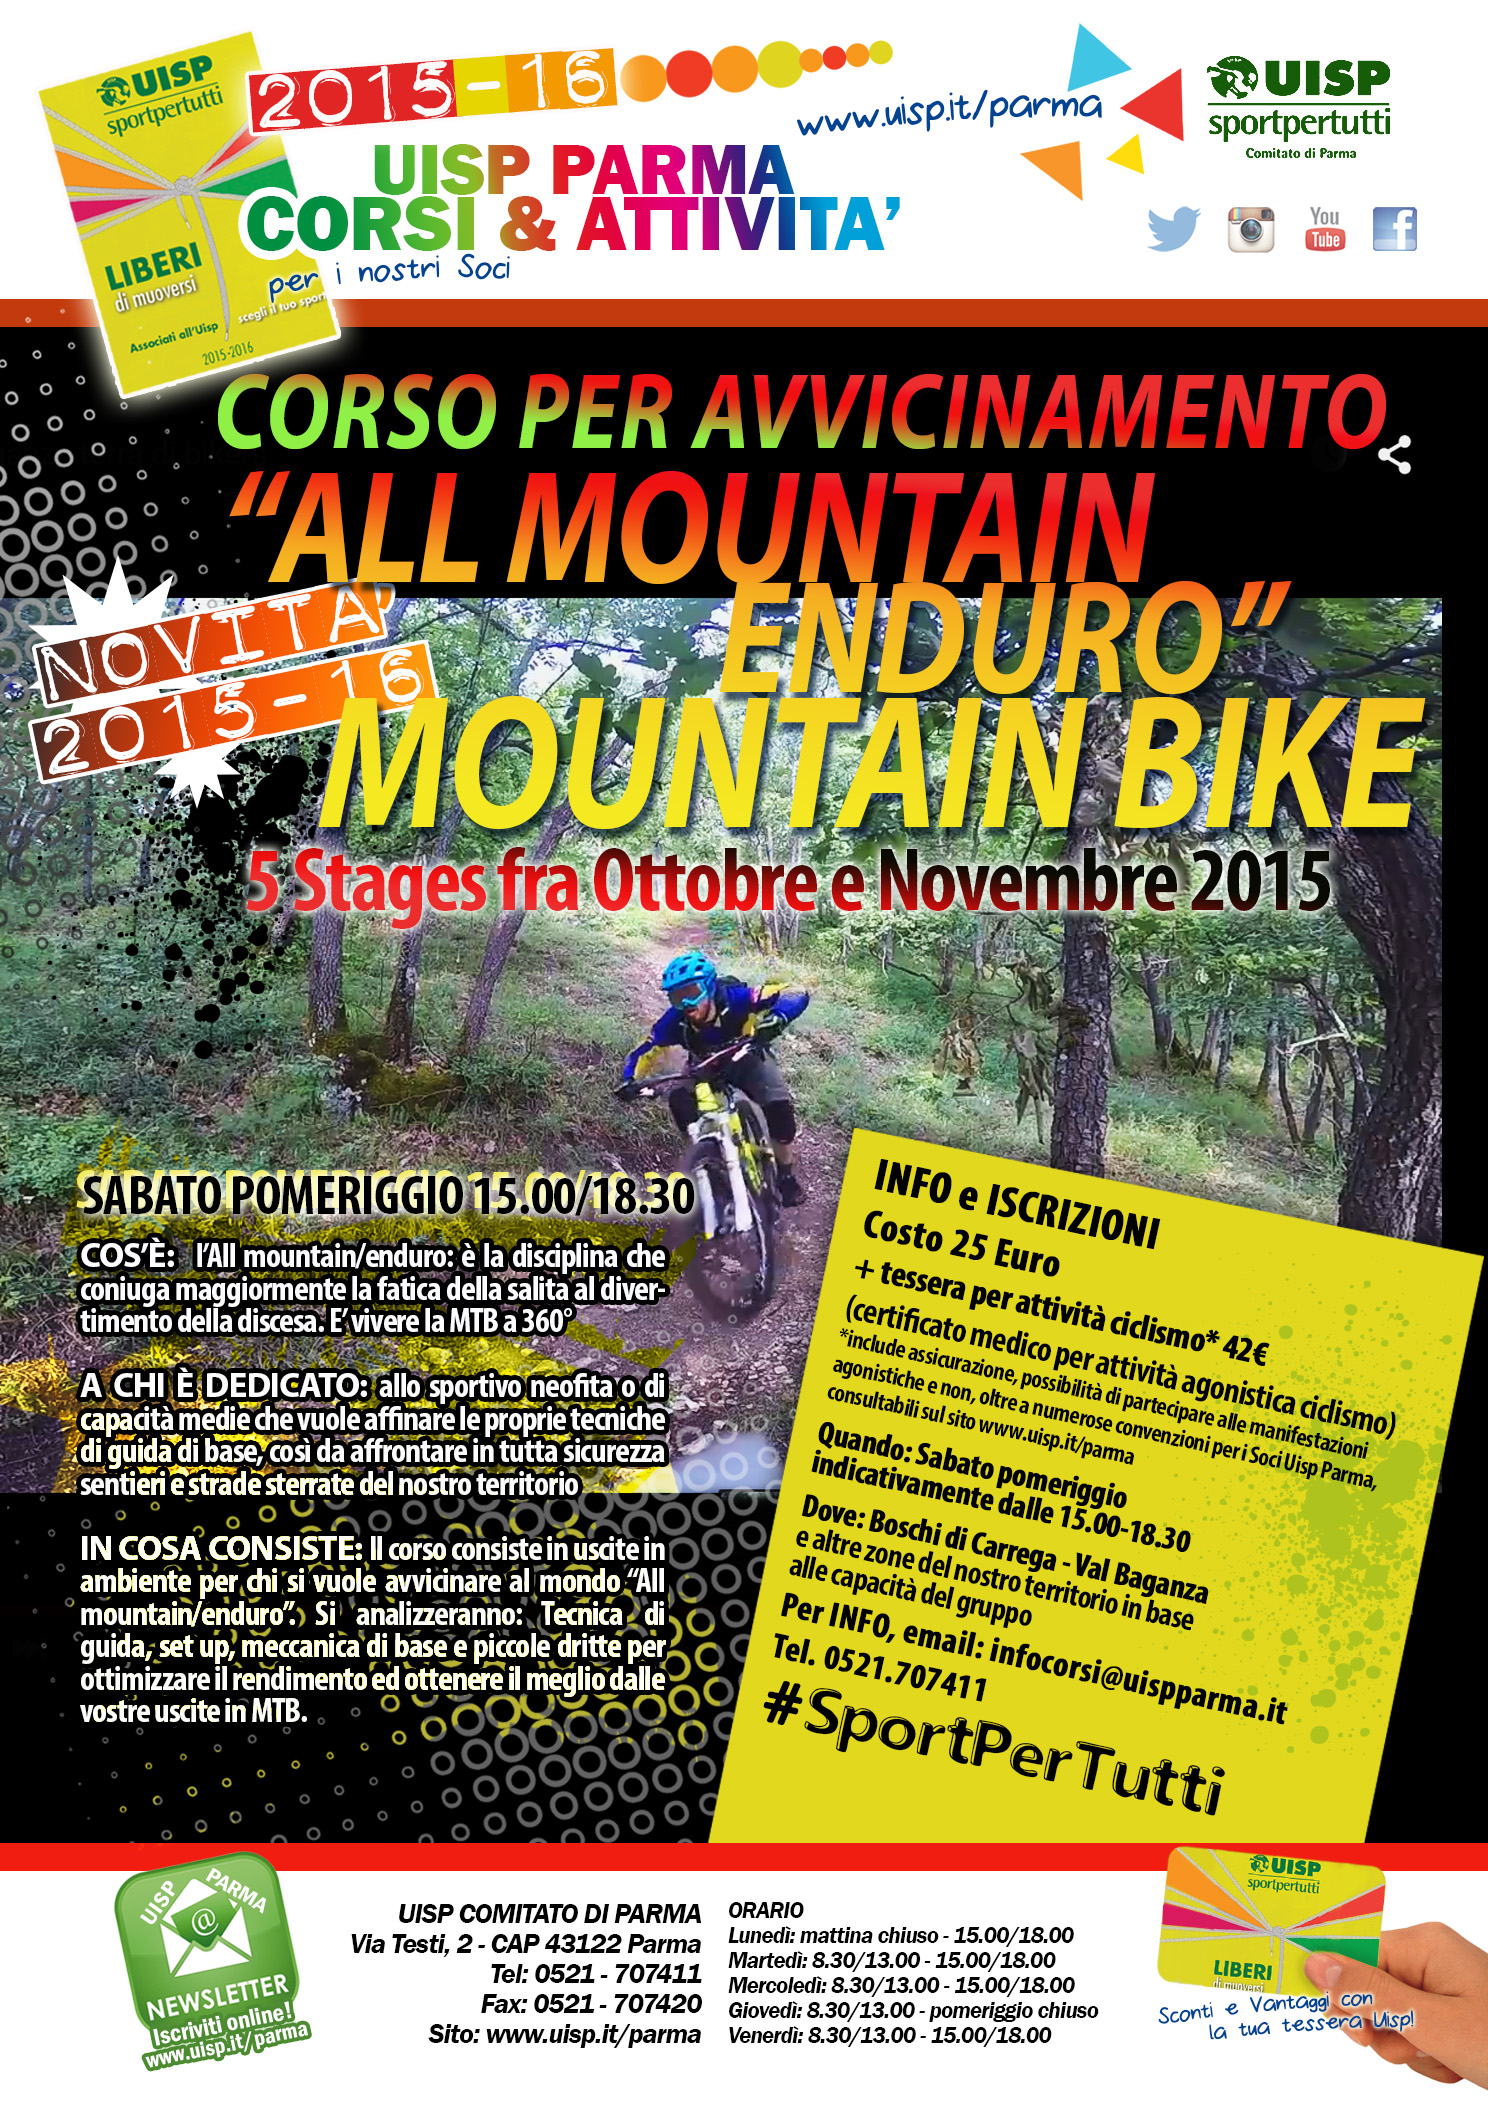 Corso All Mountain/Enduro, novità Uisp Parma 2015-16